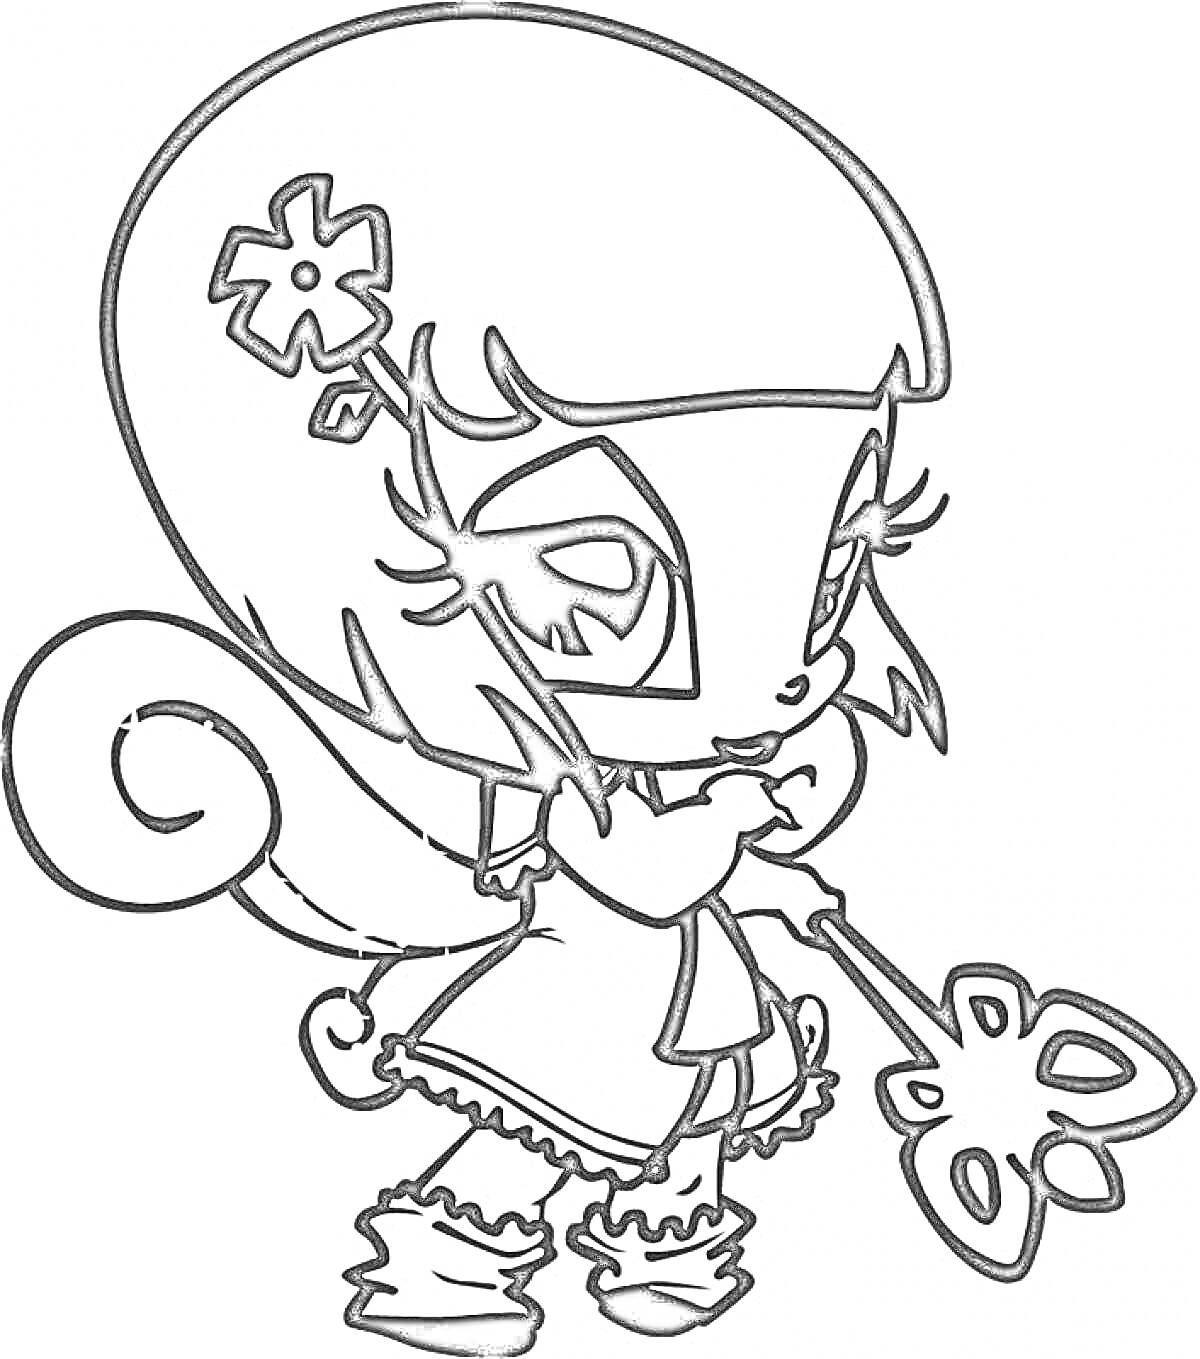 Раскраска Пикси с цветком на волосах и палочкой-бабочкой в руке